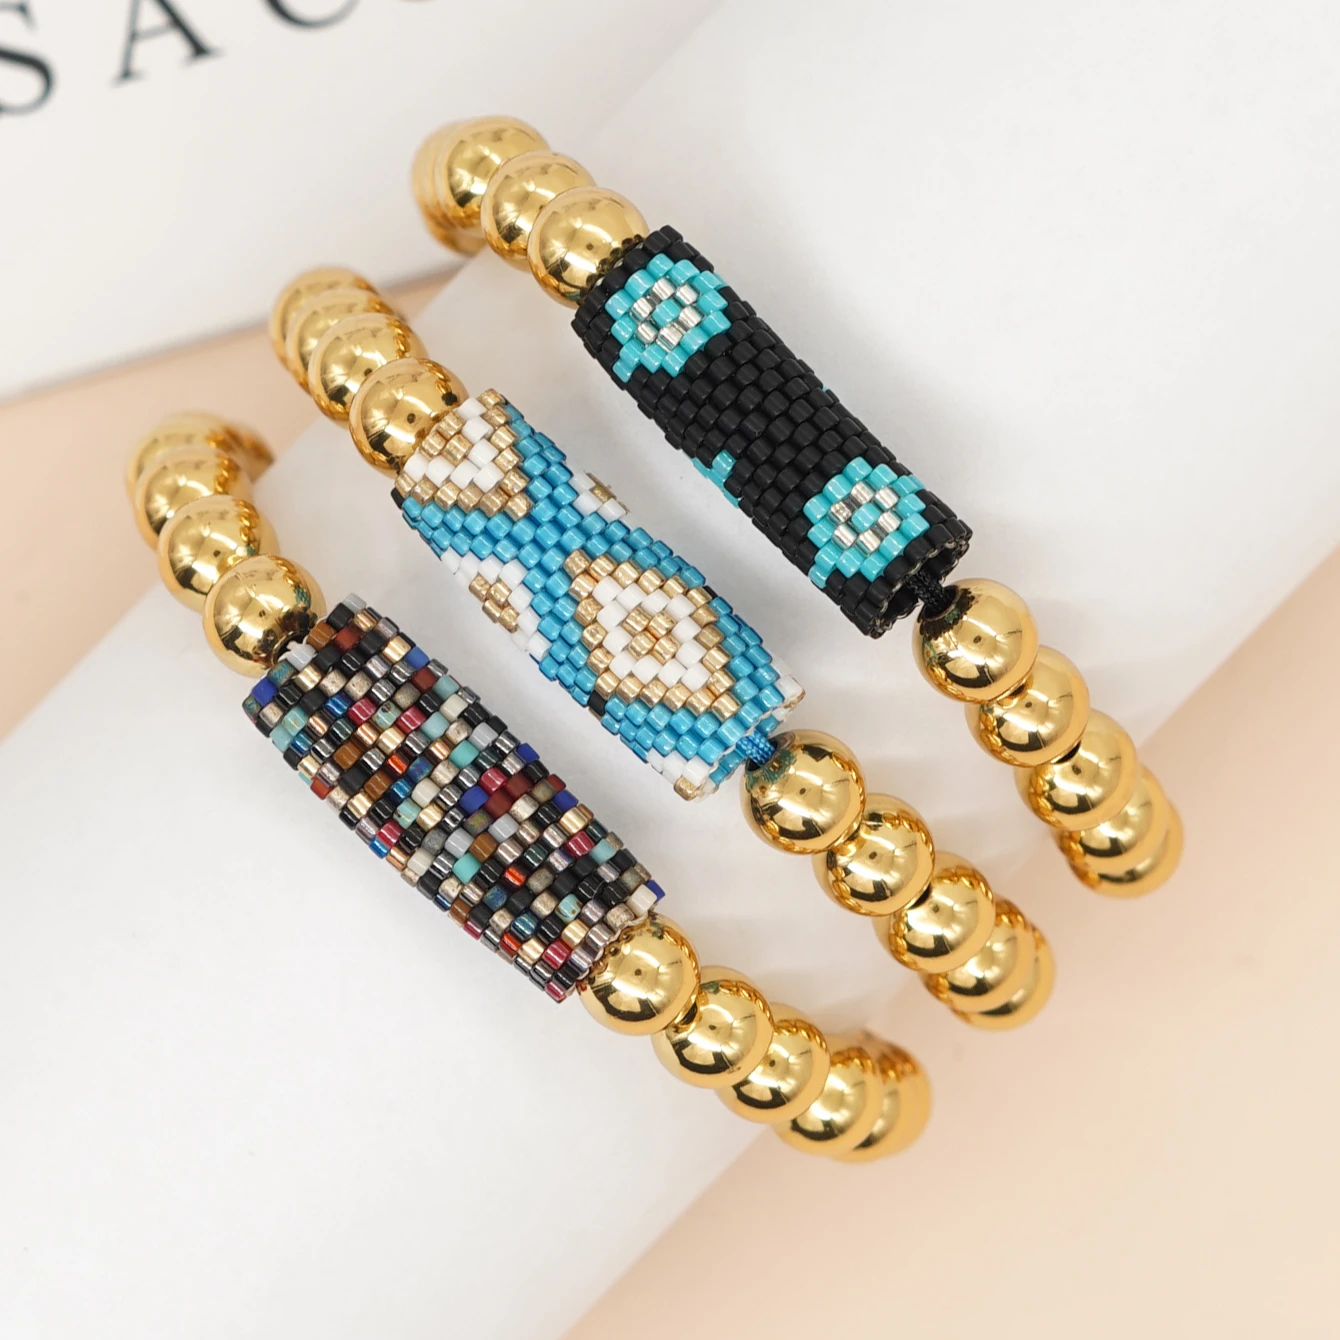 

YASTYT Evil Eye Charm Golden Bead Bracelet Boho Summer Beaded New In Bracelets For Chic Women Jewelry Best Friendship Gift